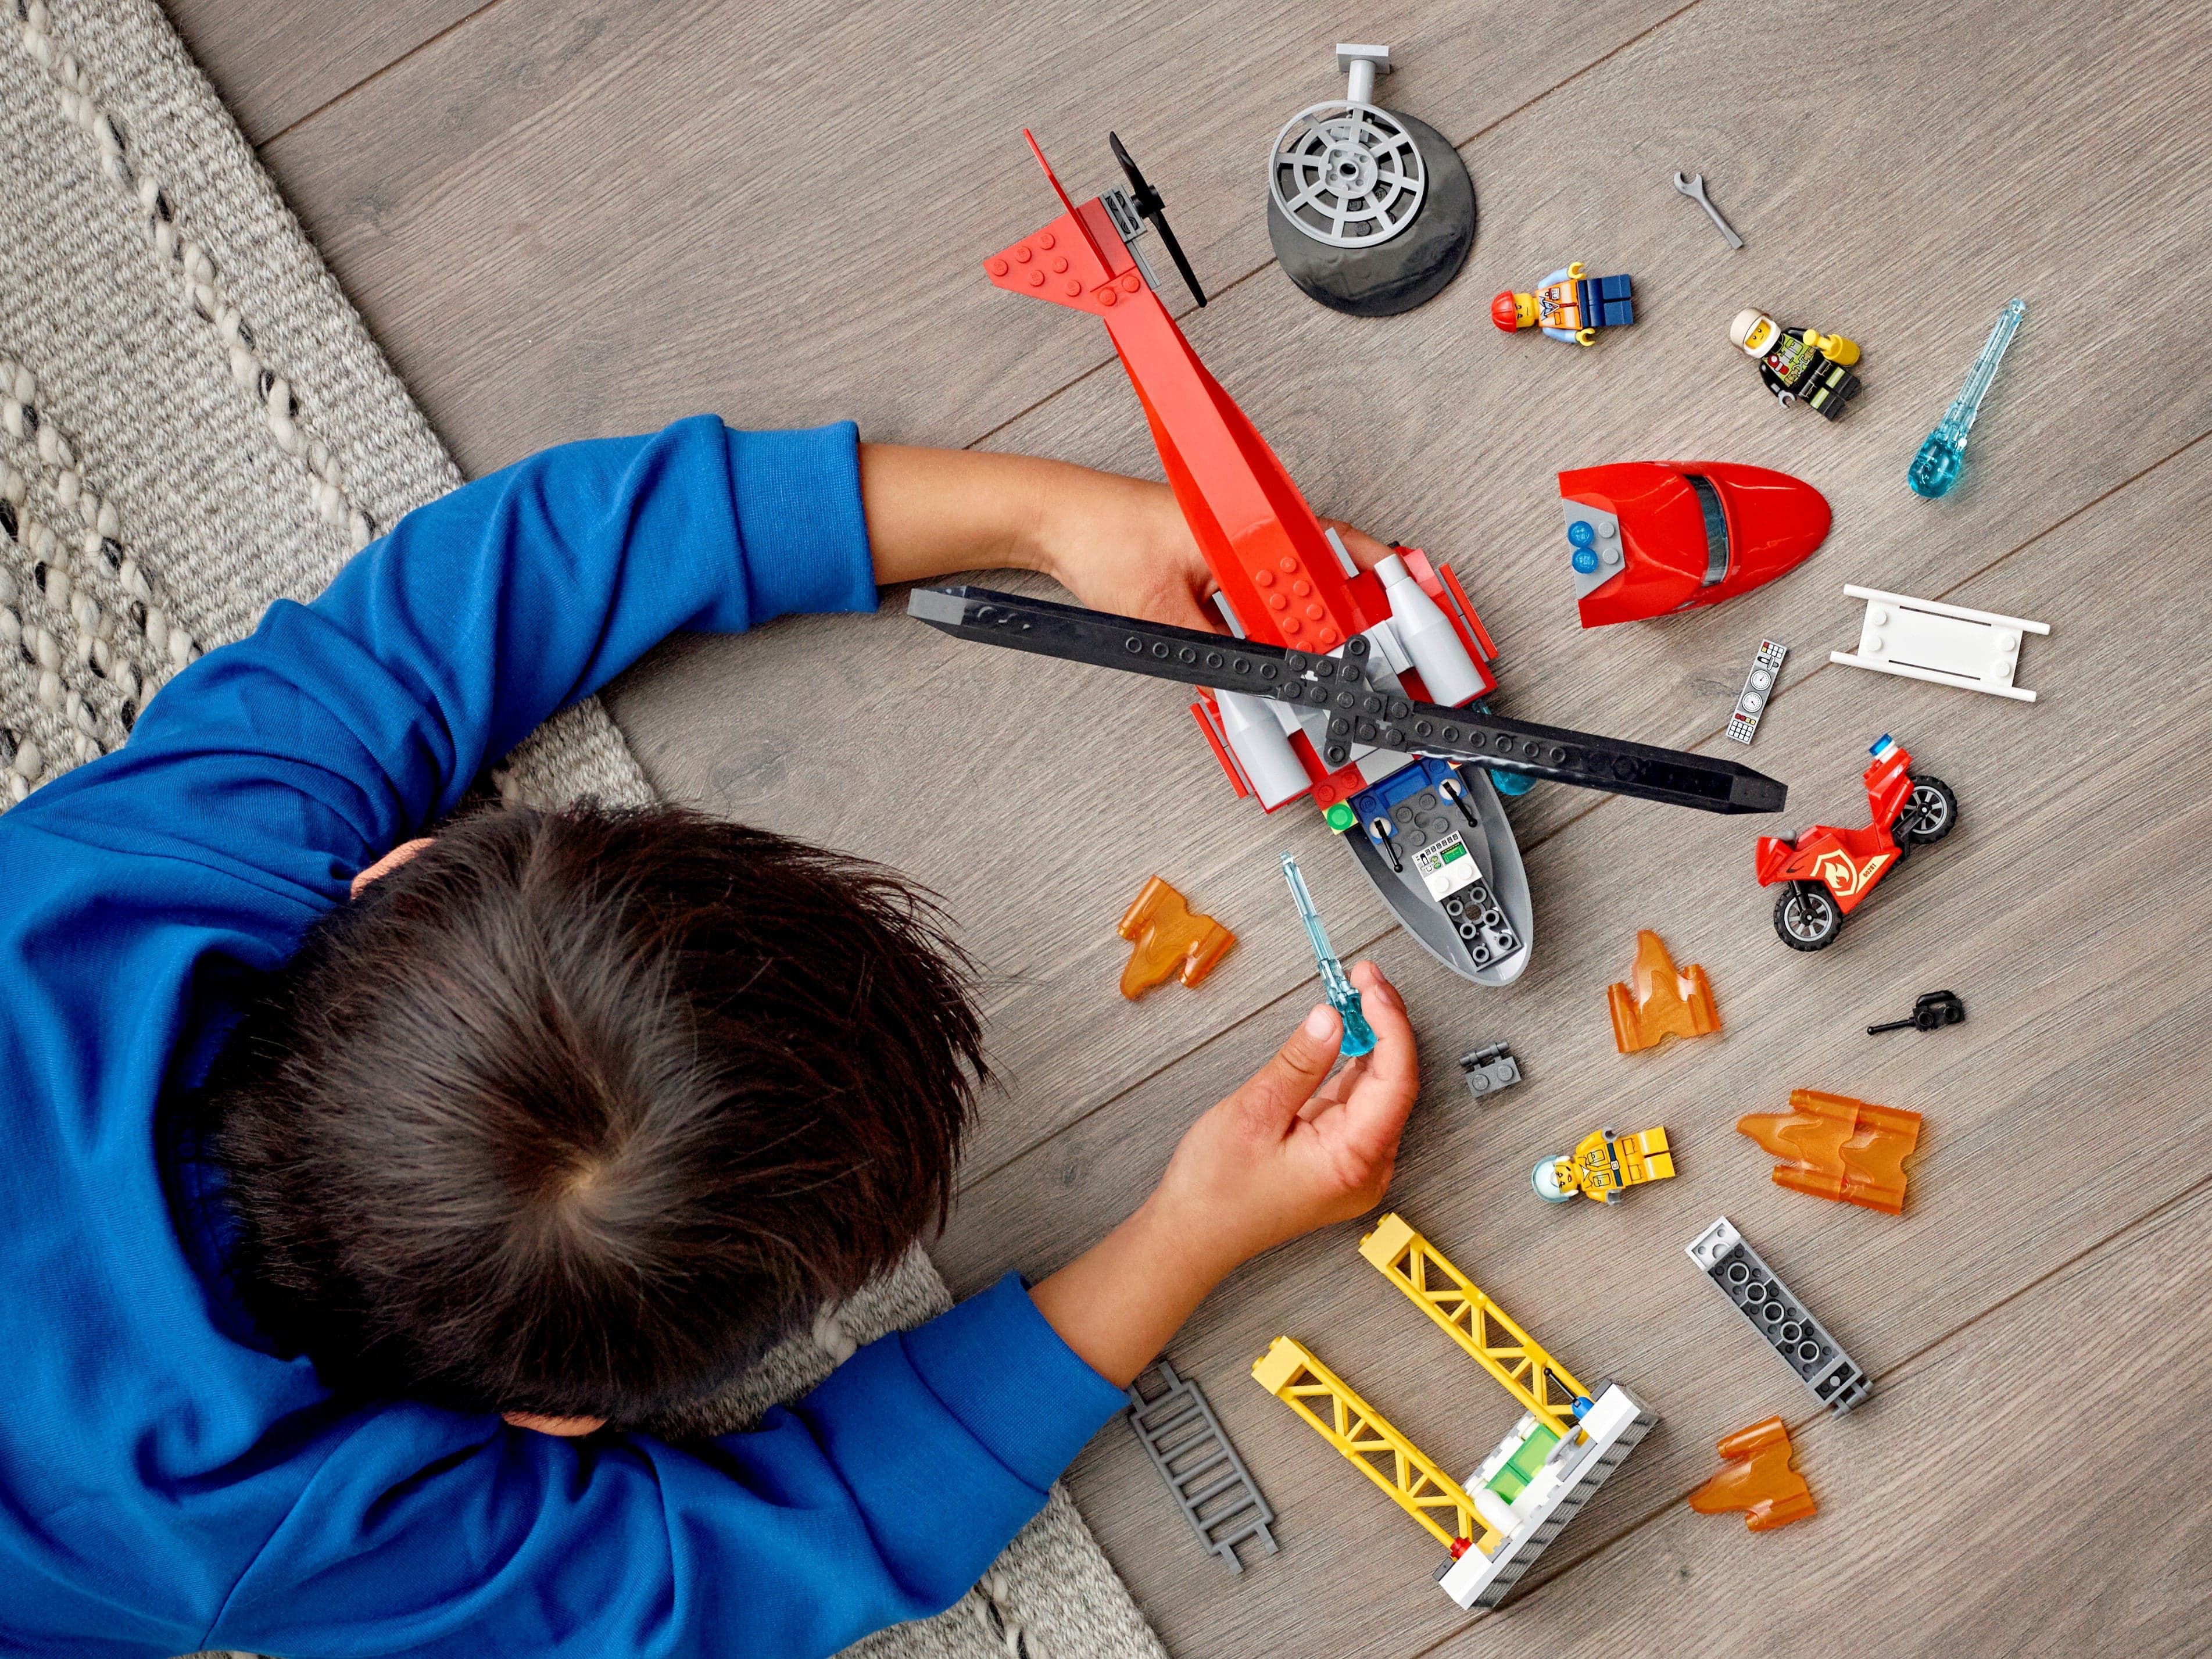 Конструктор LEGO City Fire «Спасательный пожарный вертолёт» 60281 / 212 деталей